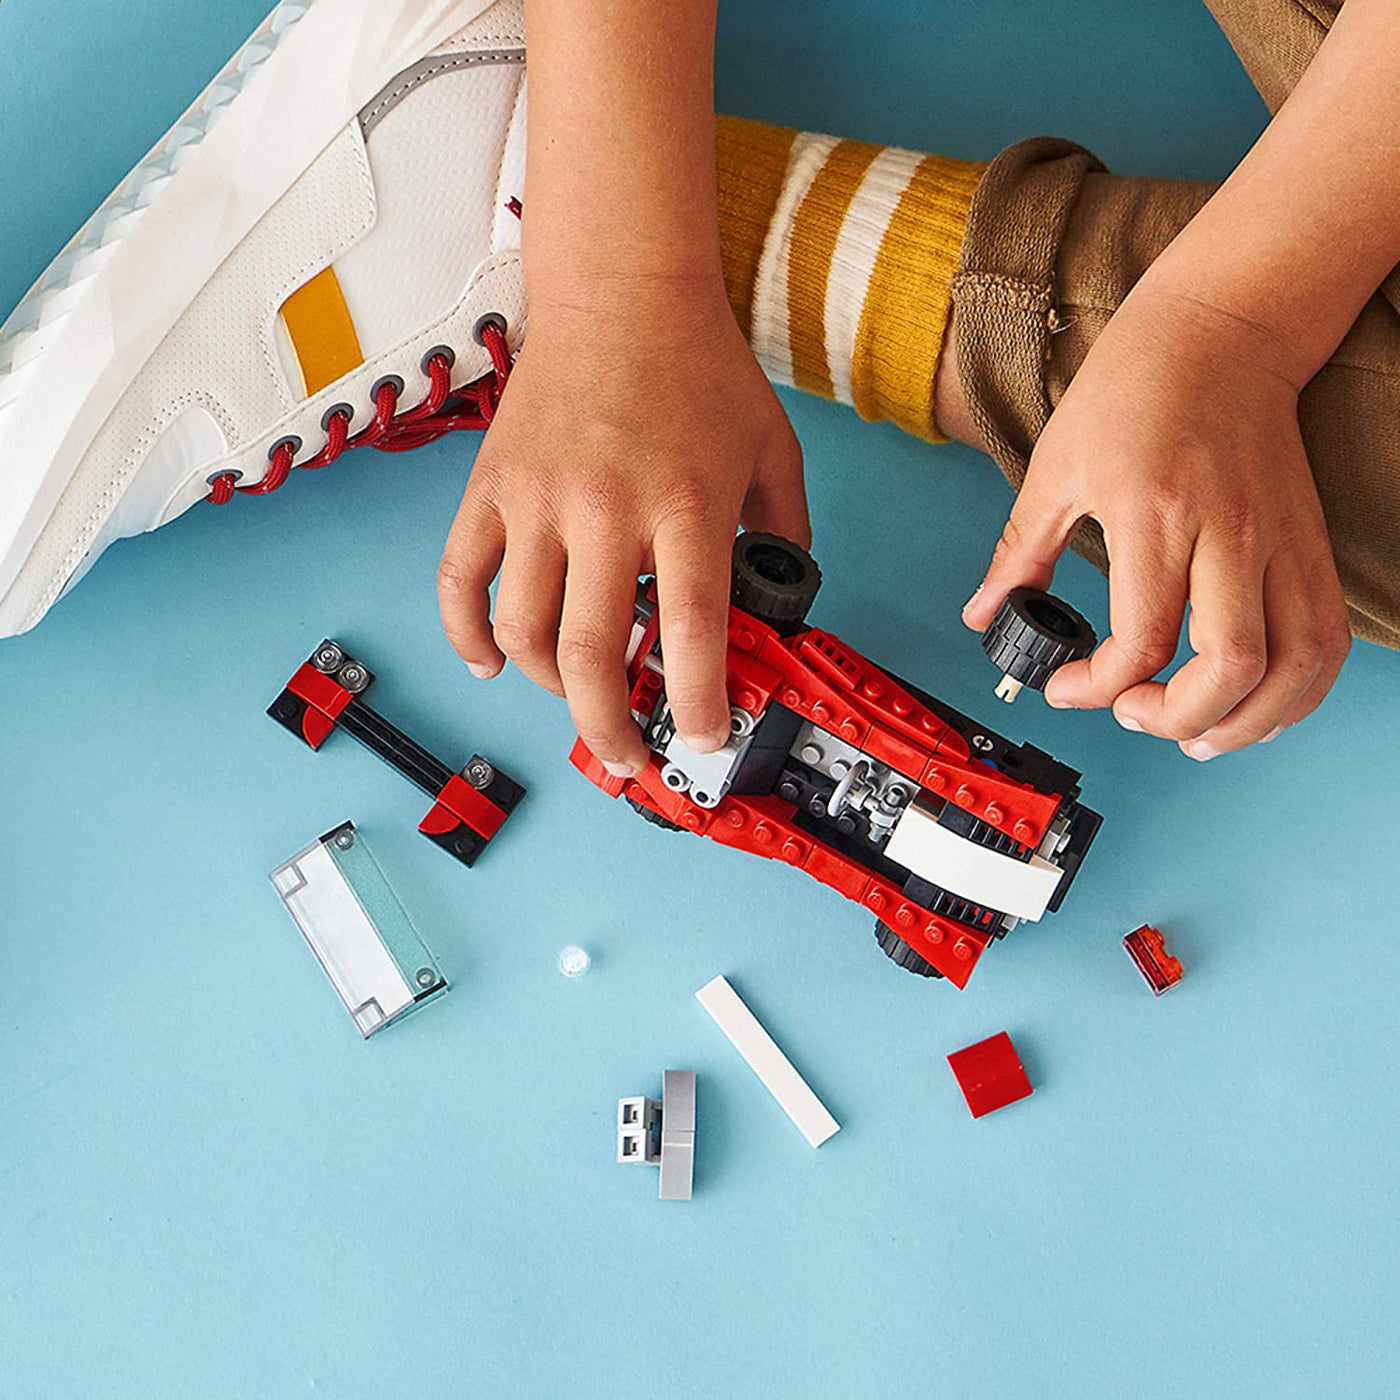 LEGO Creator: Sports Car 31100 | LEGO®